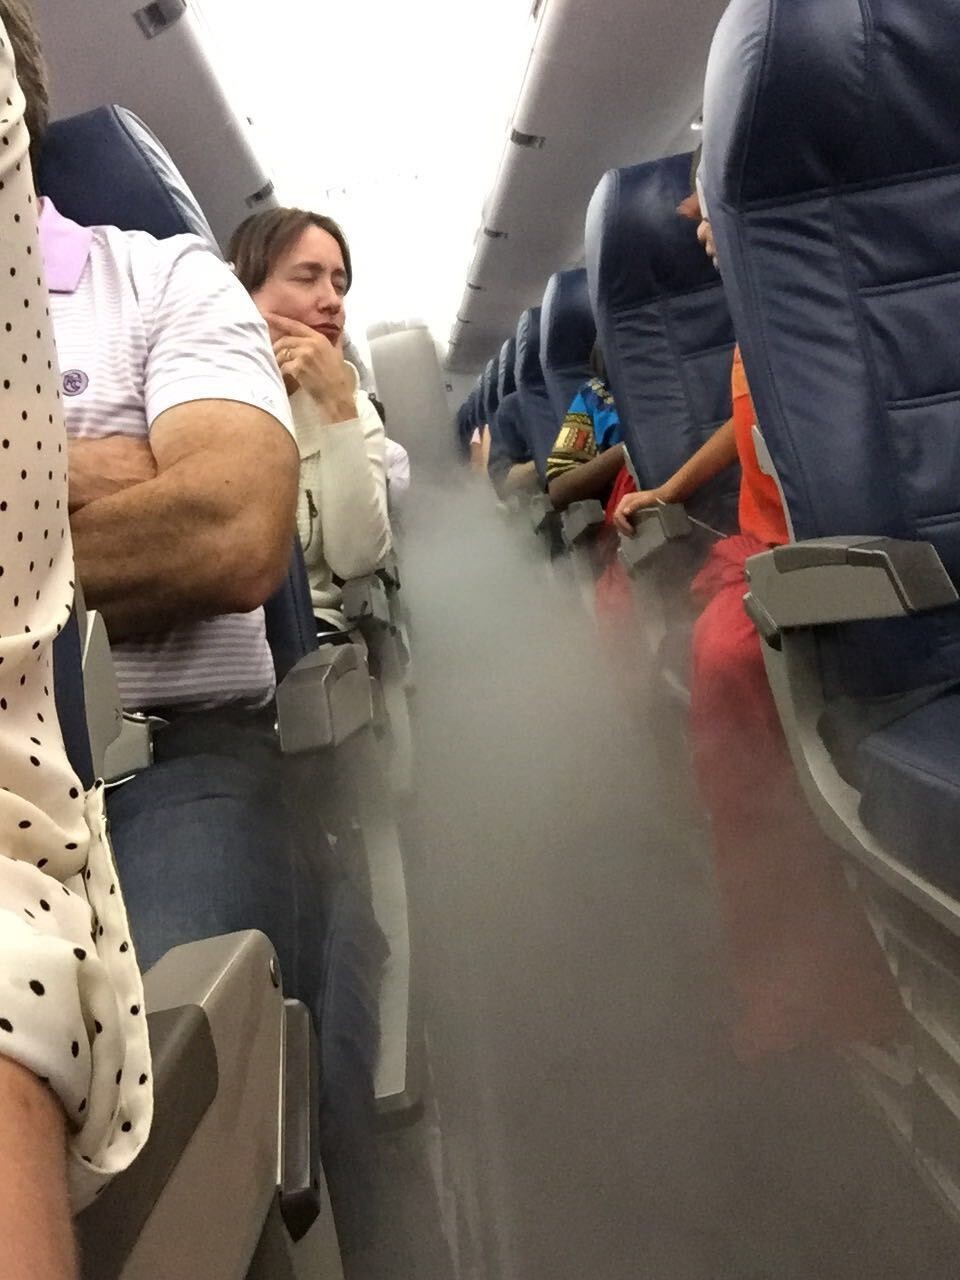 4. Влажность плюс кондиционирование воздуха на борту создали этот туман во время полета